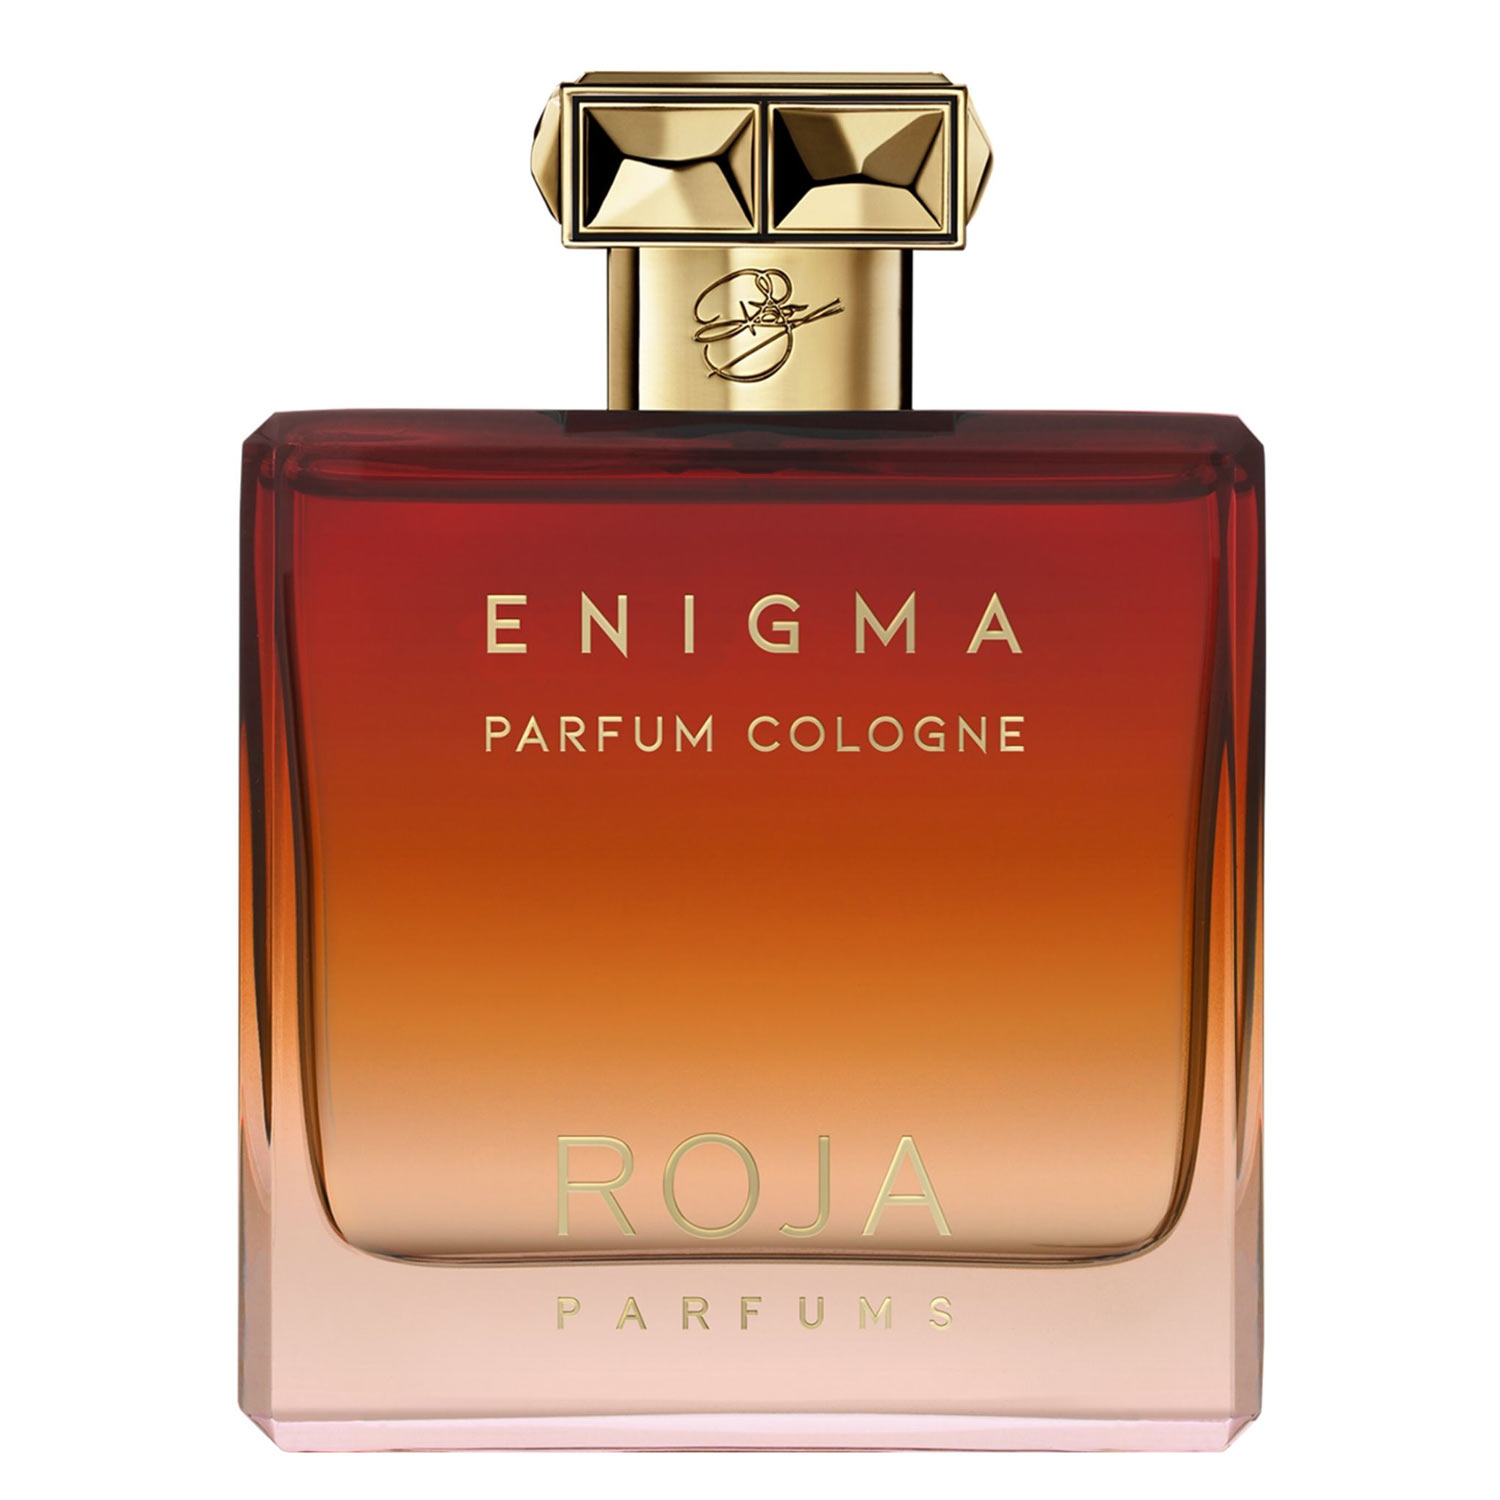 Enigma Pour Homme Roja Parfums Image